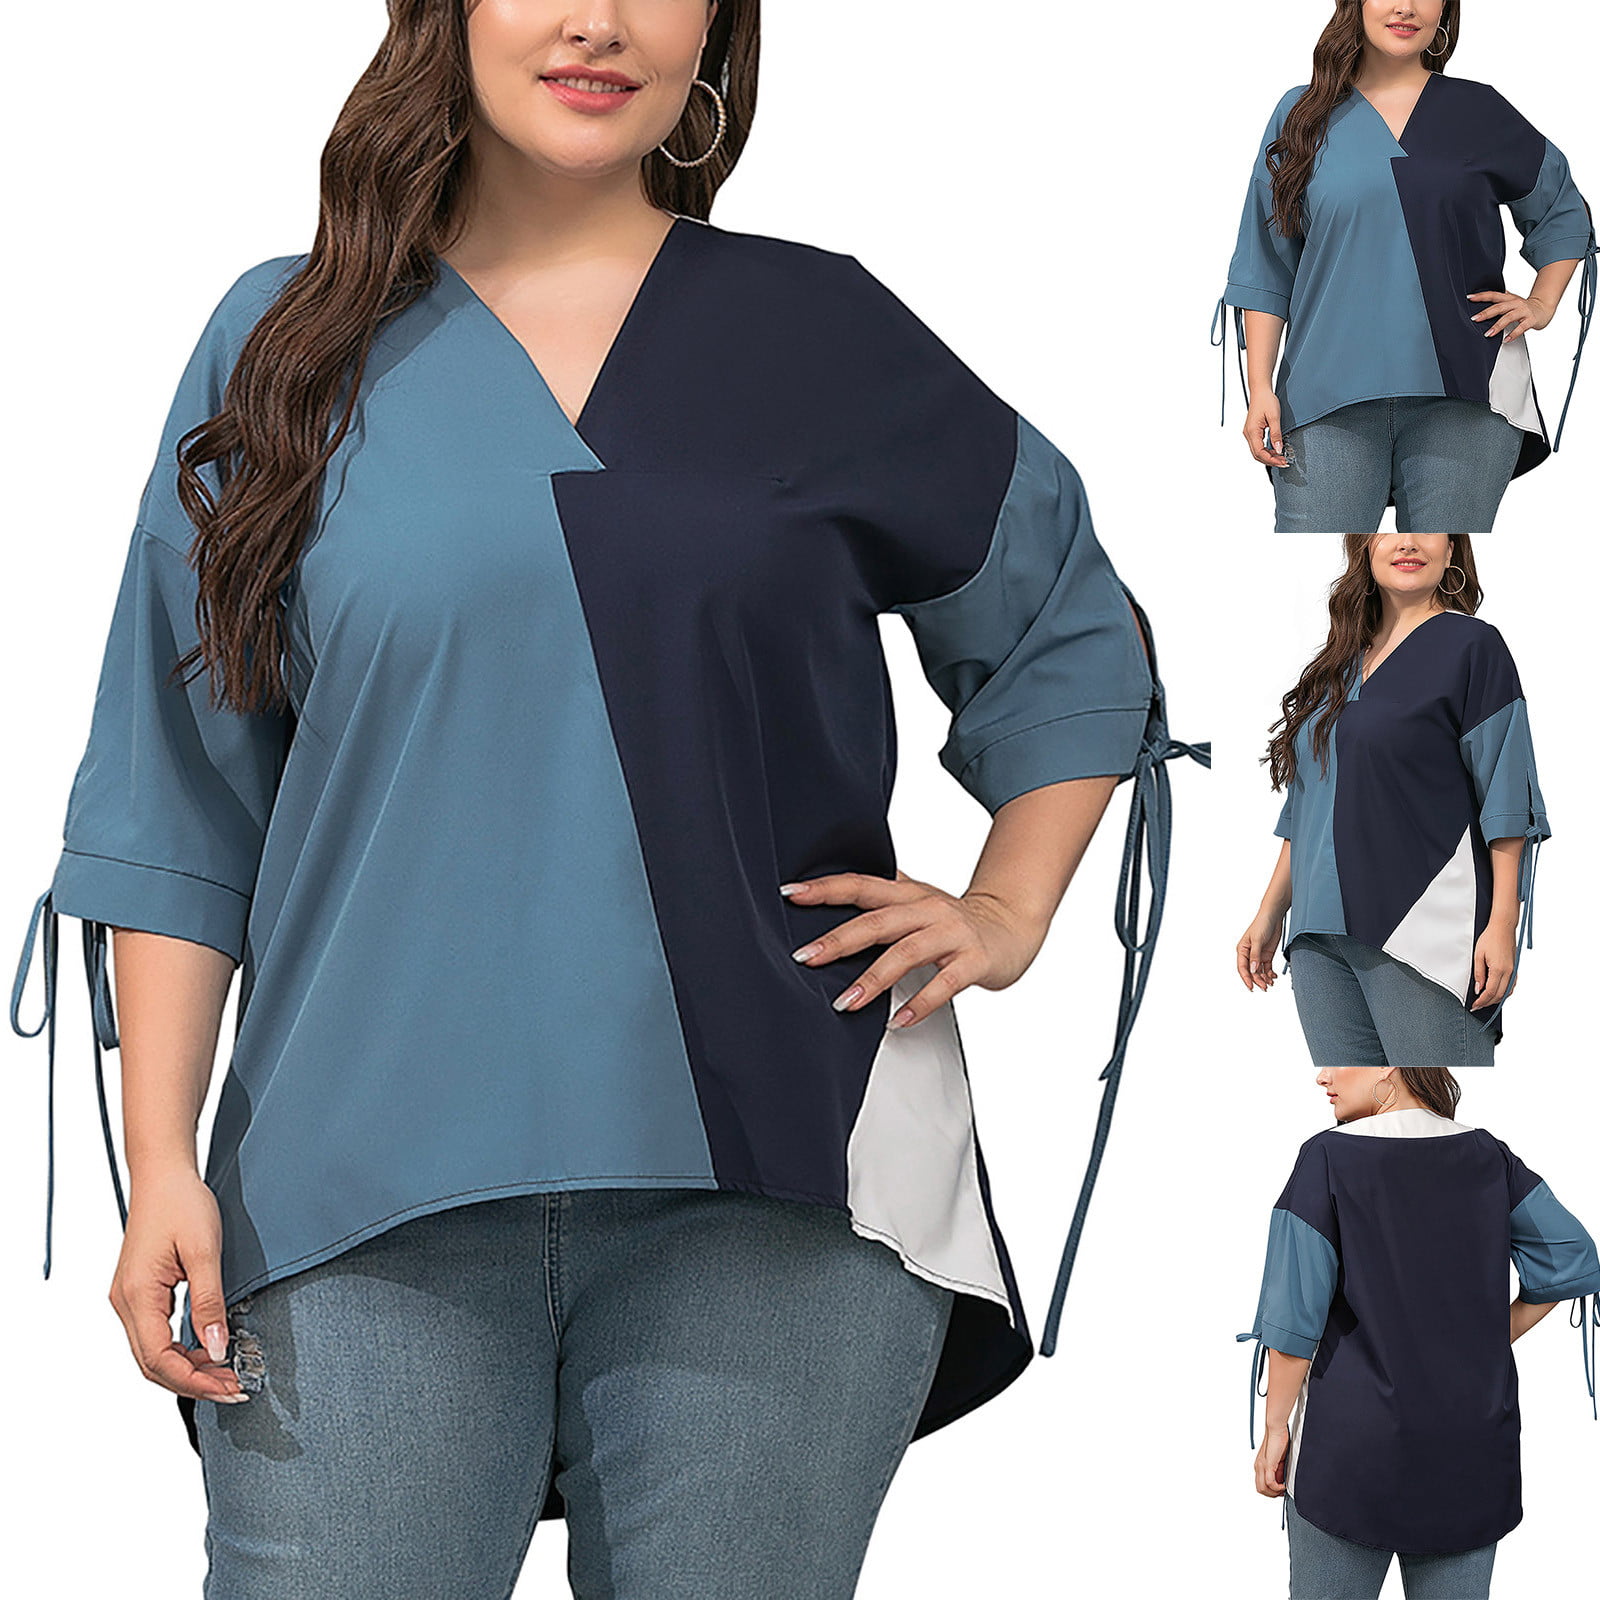 Jerdar Women Summer Tops Women Classic Plus Size Summer Panel Half Sleeve  Loose Tops Blouses Shirt Dark Blue 3XL 